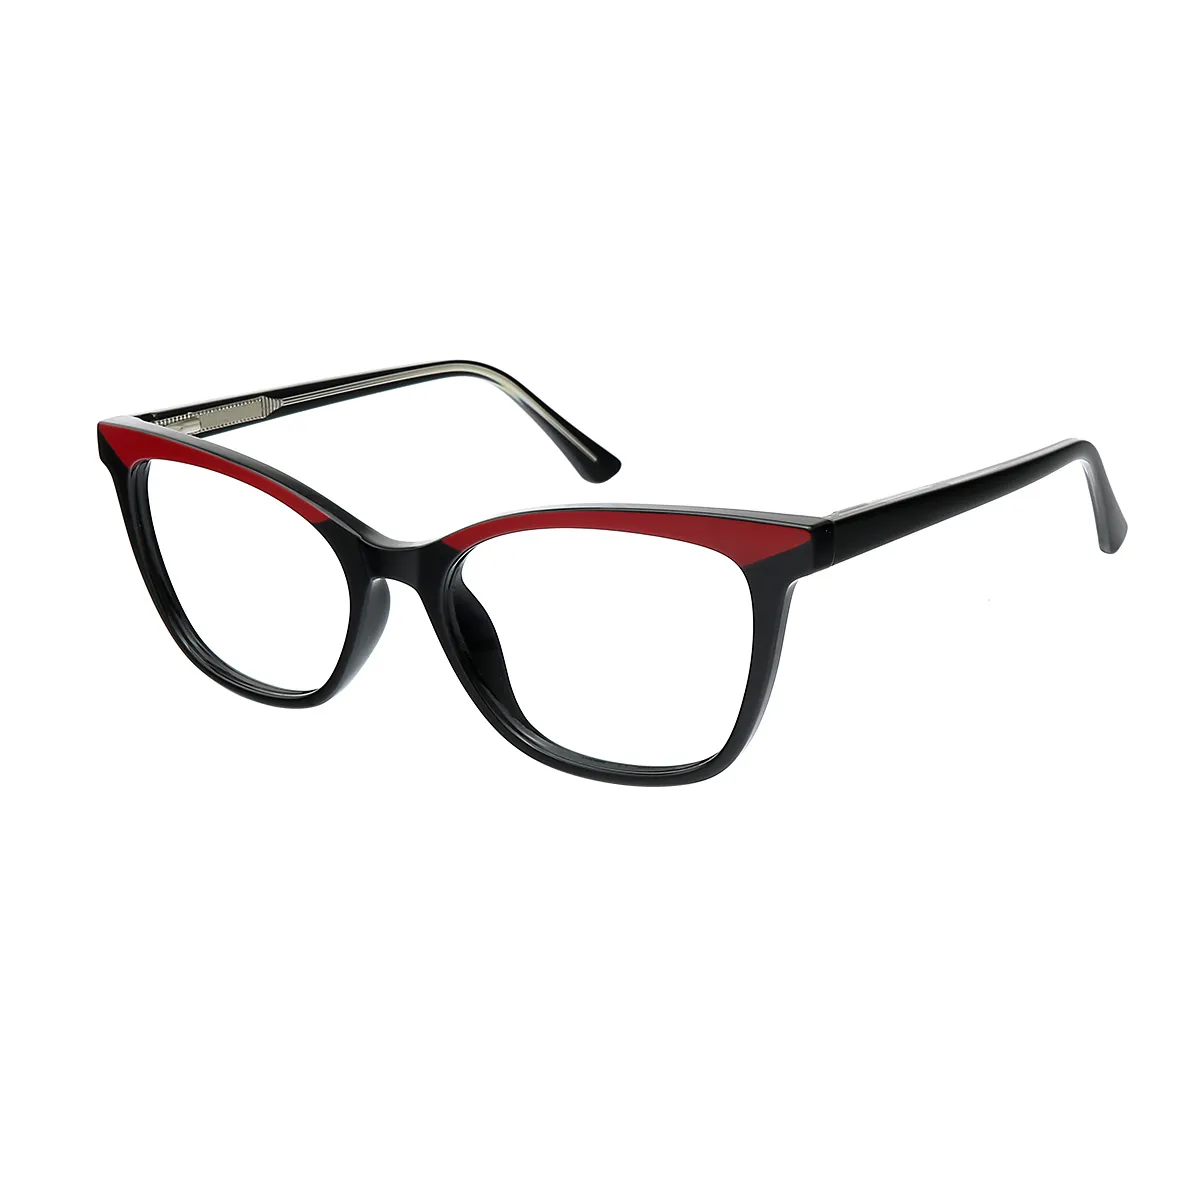 House - Cat-eye Black-Red Glasses for Women